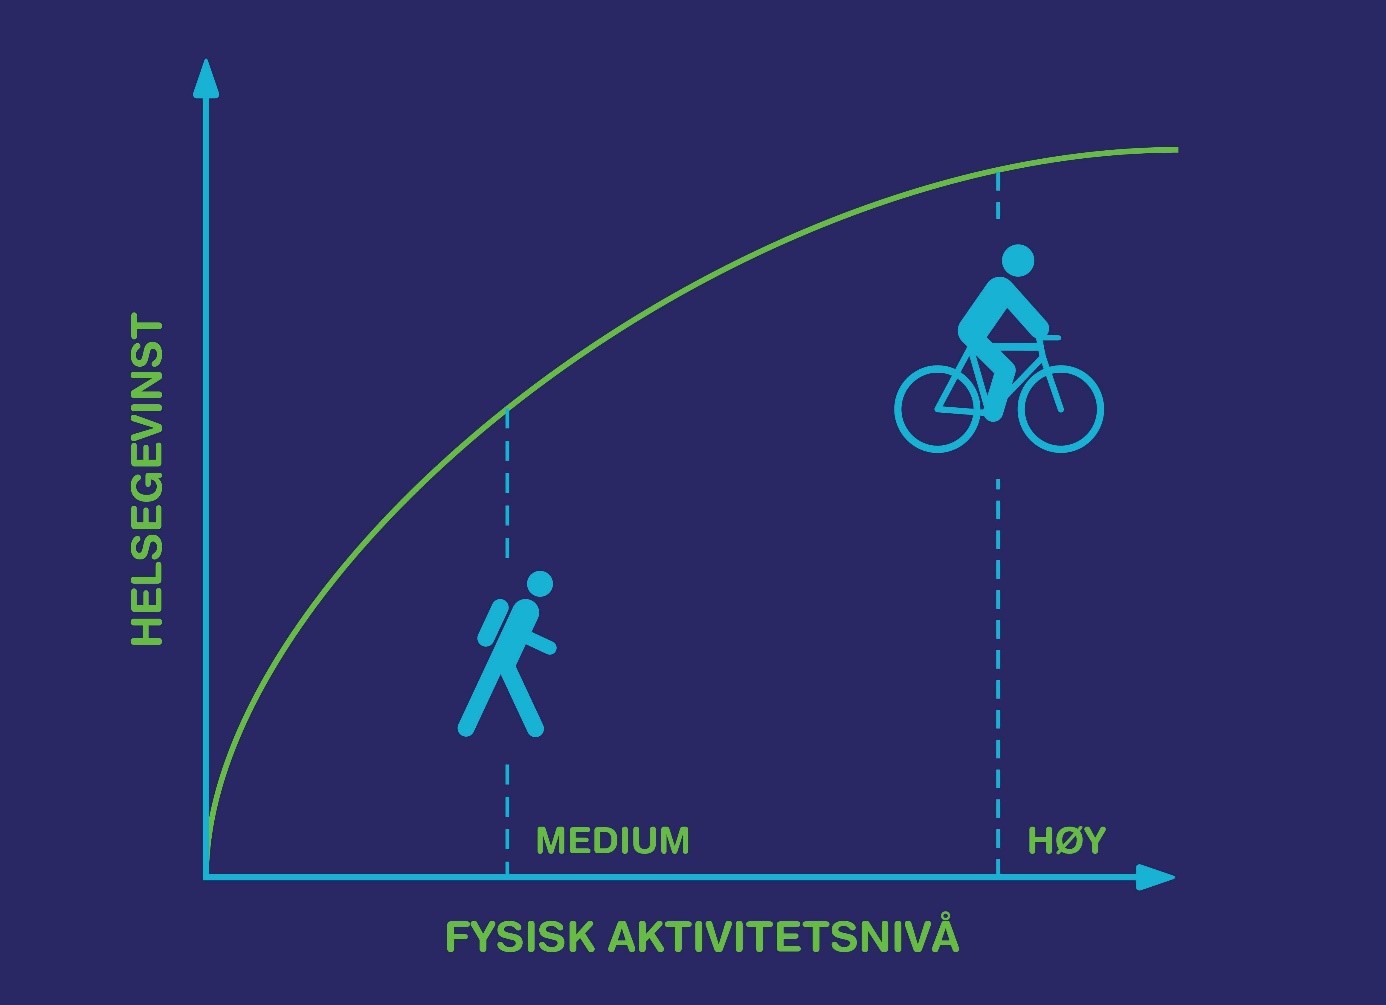 Kurve av hva helsegevnisten er hvis man øker fra litt aktiv til aktiv